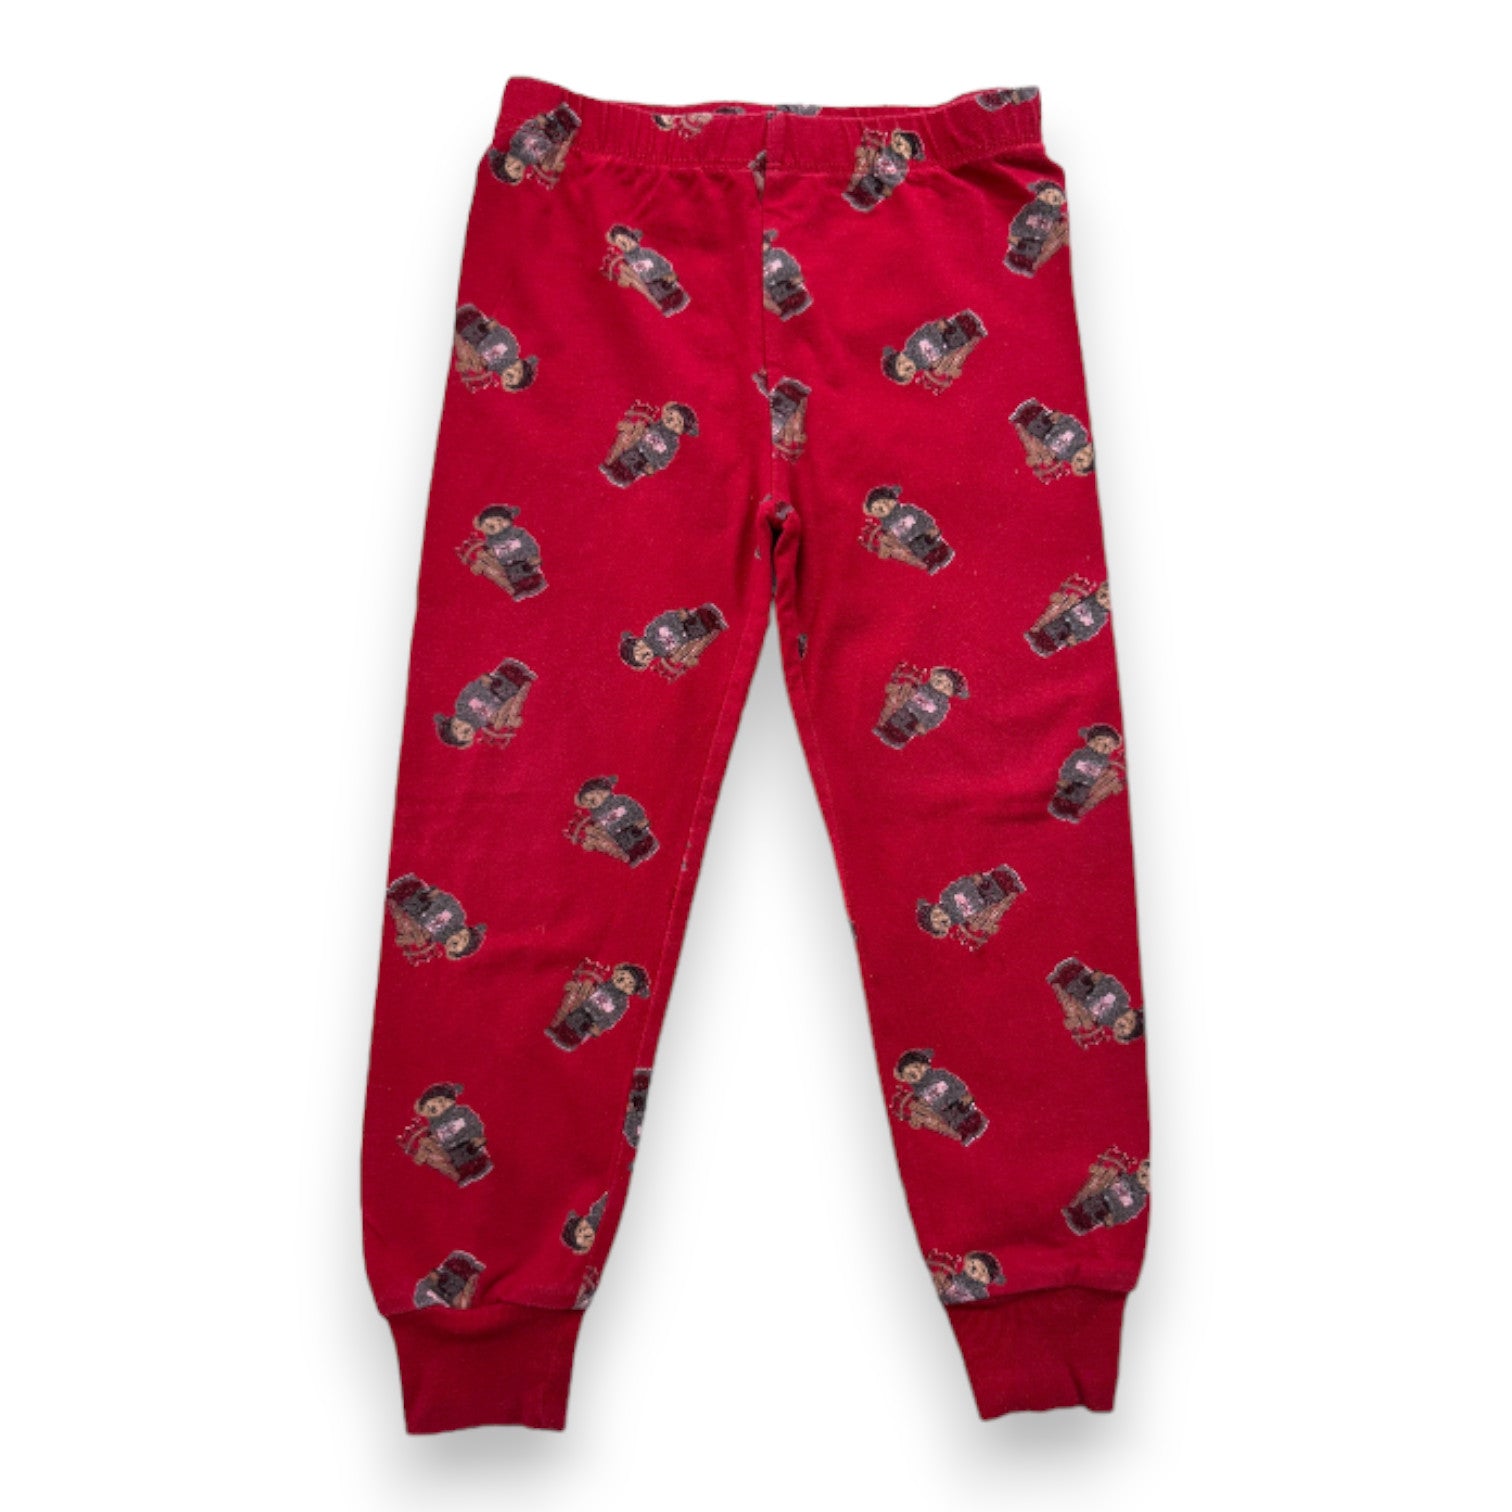 RALPH LAUREN - Bas de pyjama rouge avec imprimés oursons - 3 ans